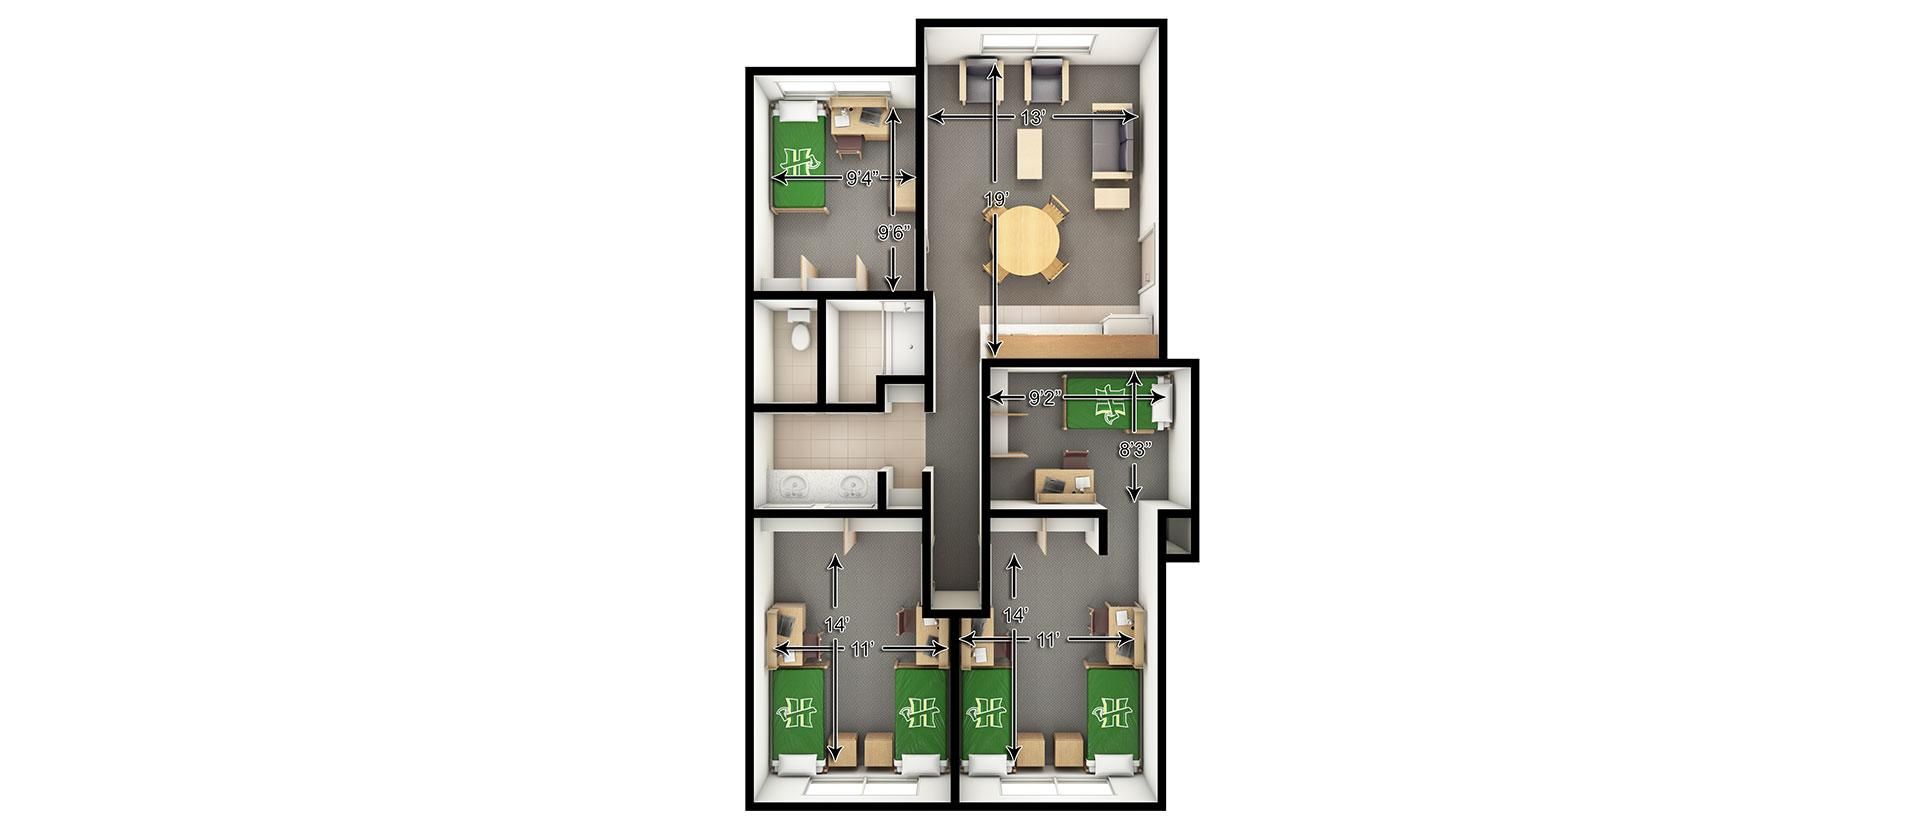 Creekview Suite Floor Plan